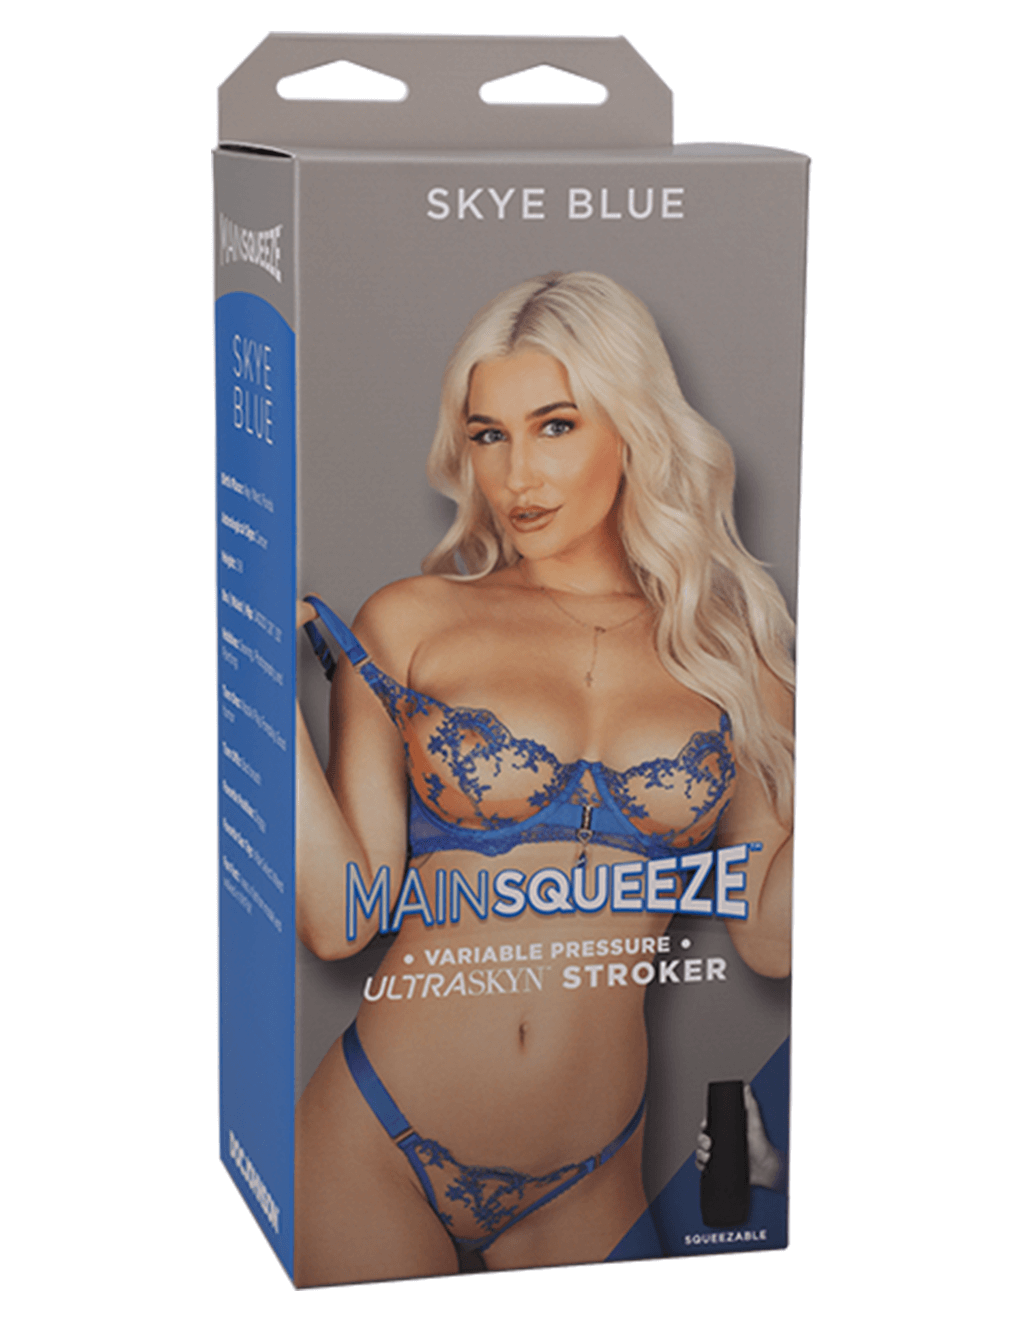 Main Squeeze Skye Blue Ultraskyn Stroker Pussy Package